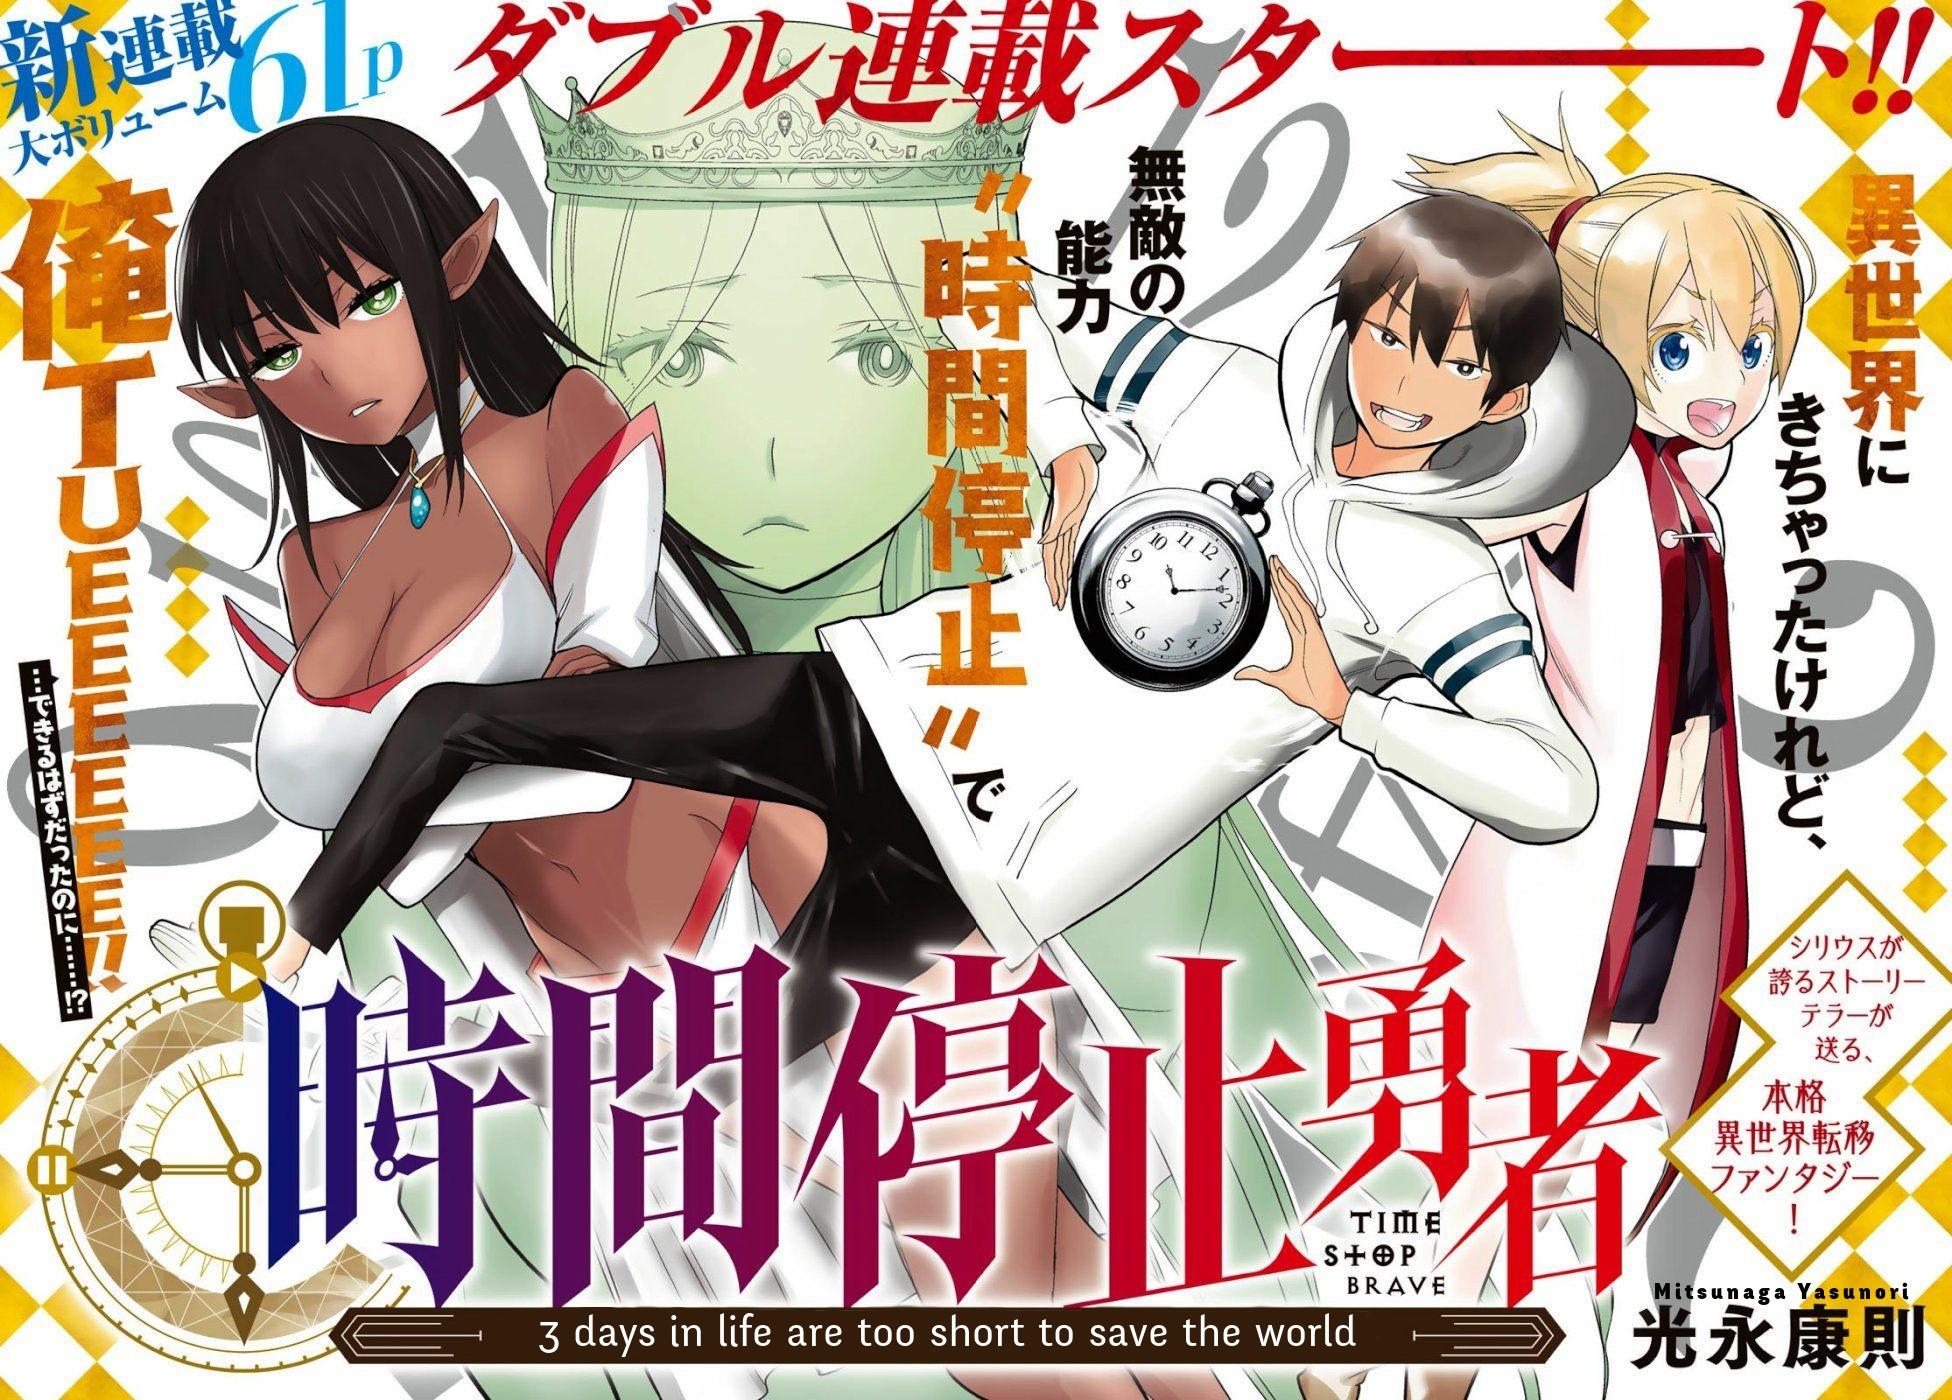 Time stop hero vol. 4 - MITSUNAGA, YASUNORI - Compra Livros ou